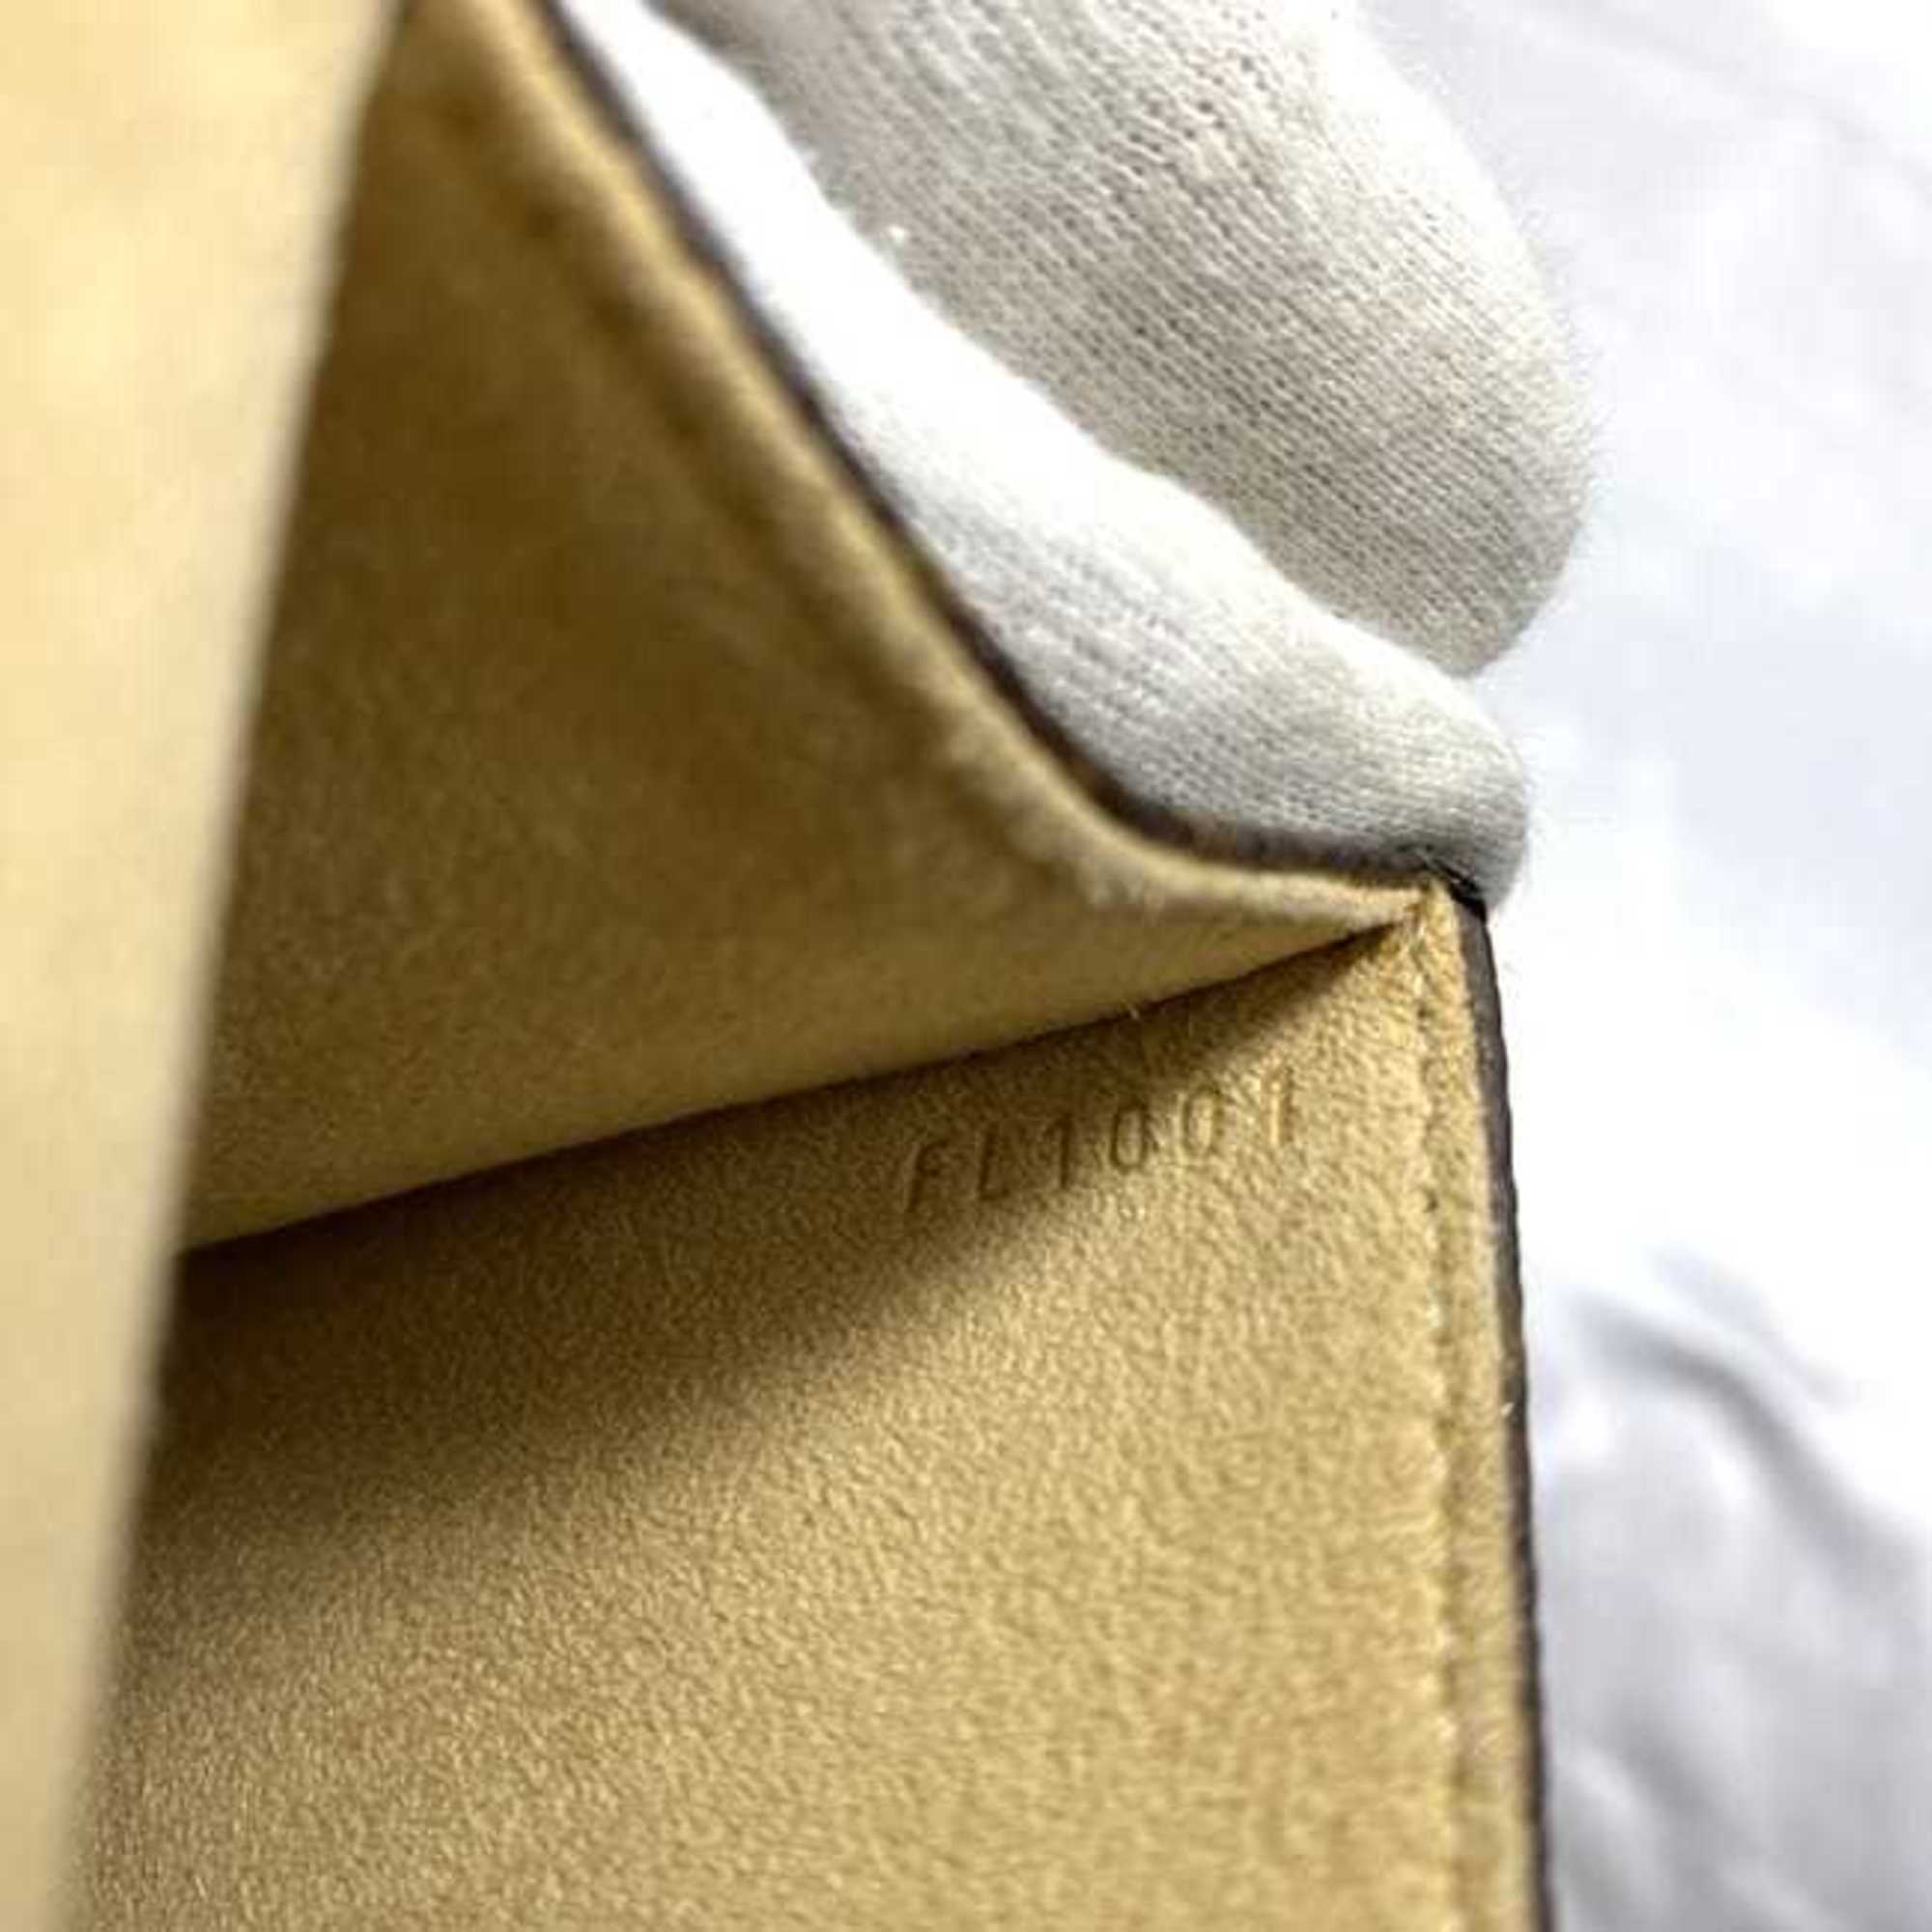 Louis Vuitton Belt Bag Pochette Florentine Brown Monogram M51855 f-20273 XS Waist Pouch Canvas Tanned Leather FL0012 FL1001 LOUIS VUITTON Flap